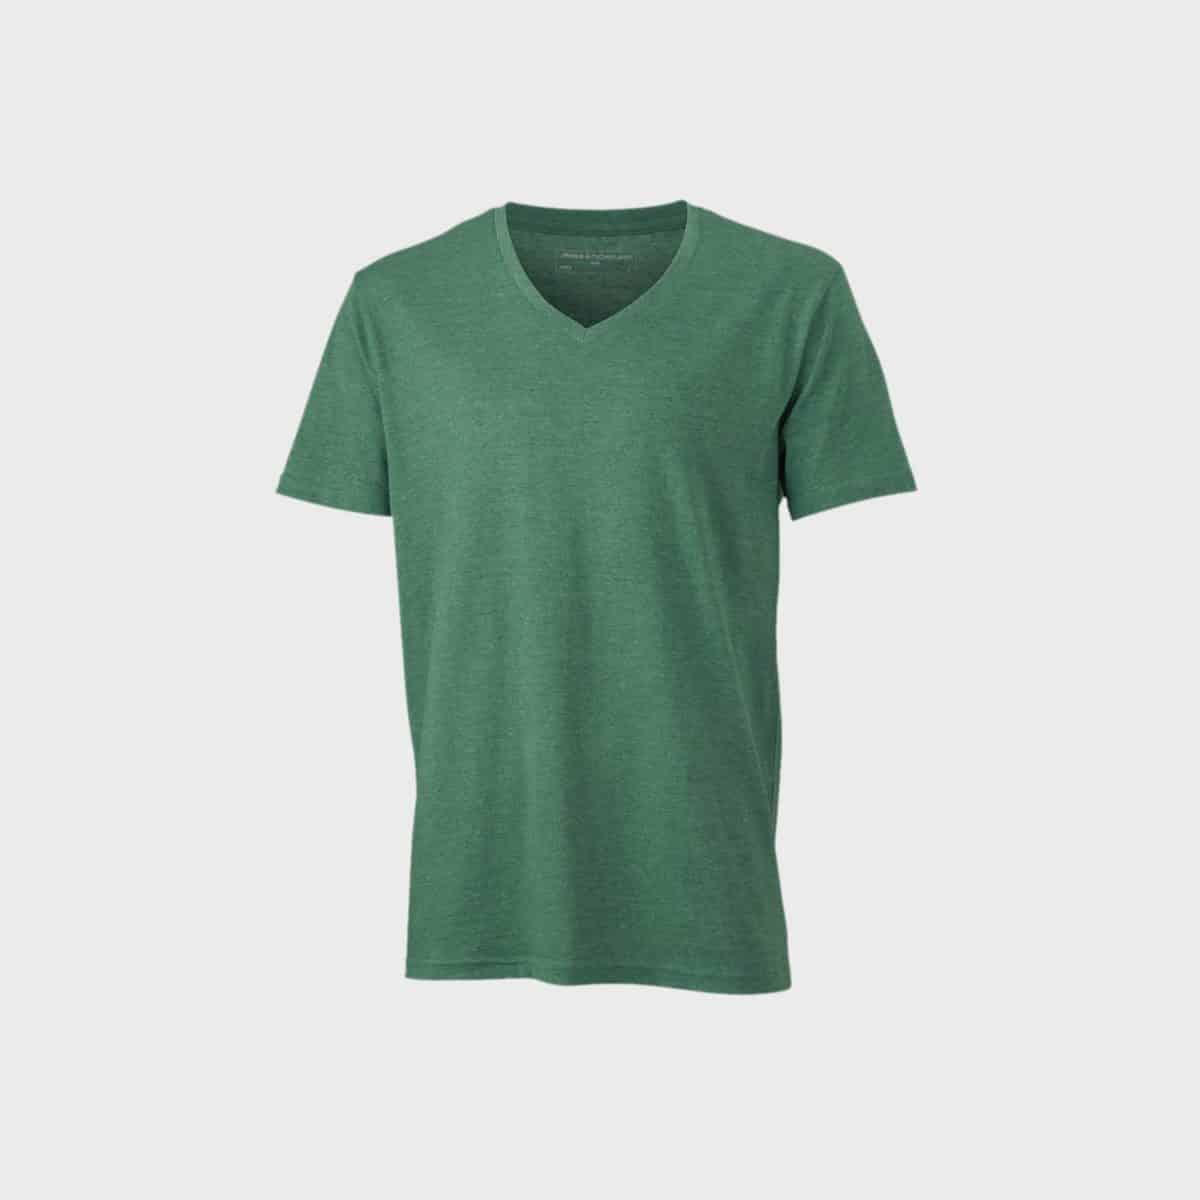 v-neck-heather-t-shirt-men-greenmelange-buy-embroider_manufacture